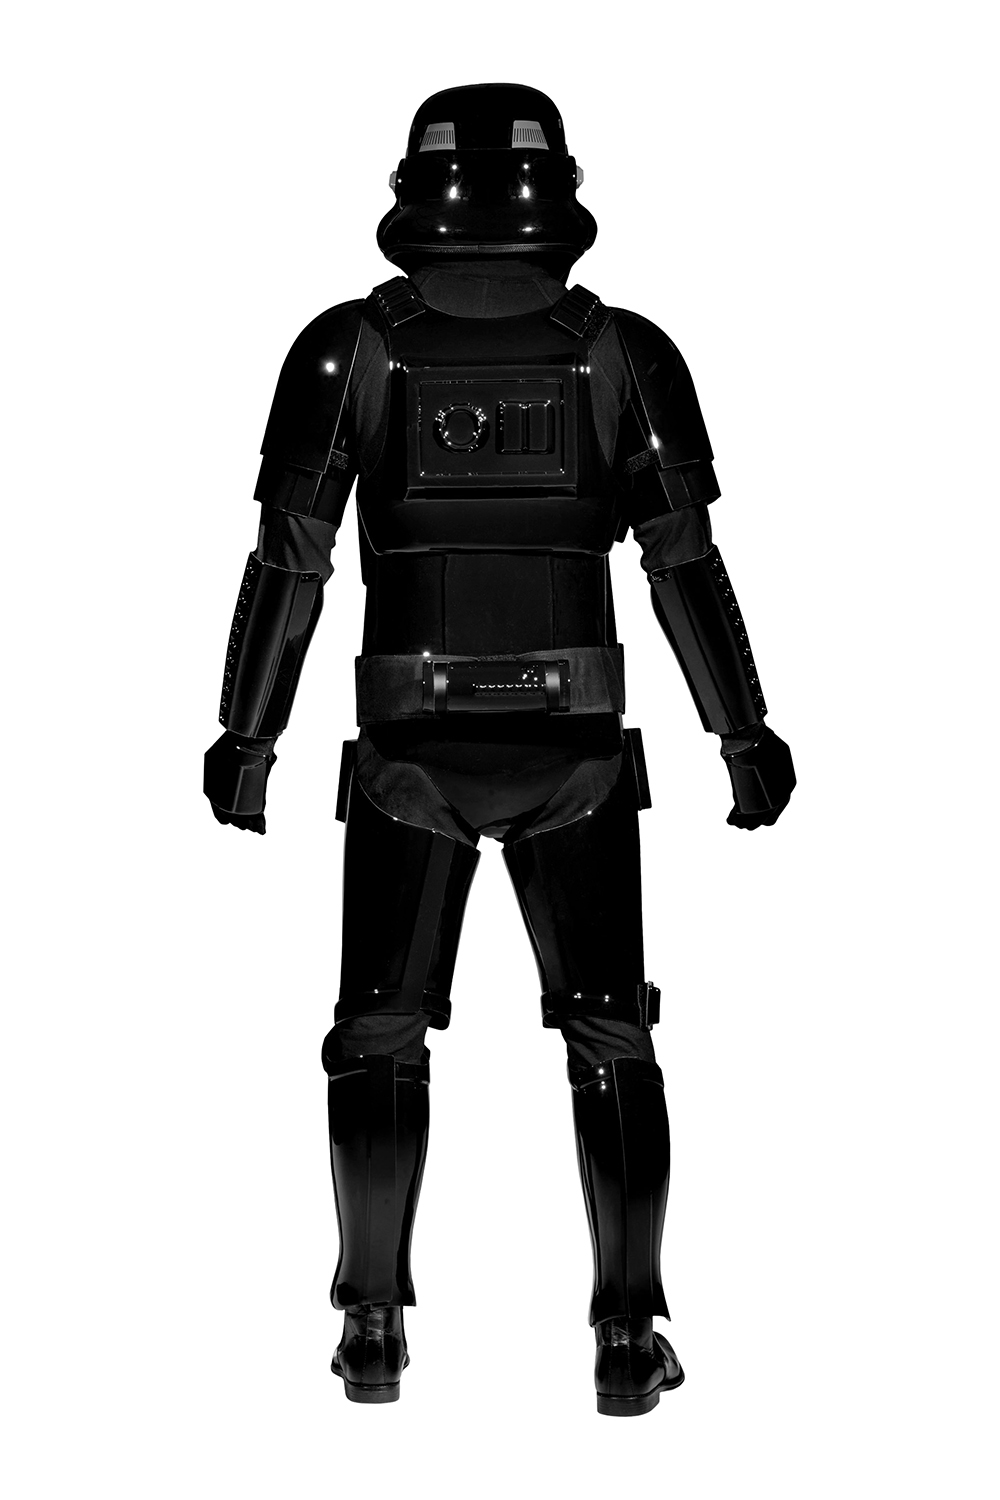 Stormtrooper Sandtrooper Shadowtrooper costume armour body suit under suit lycra 